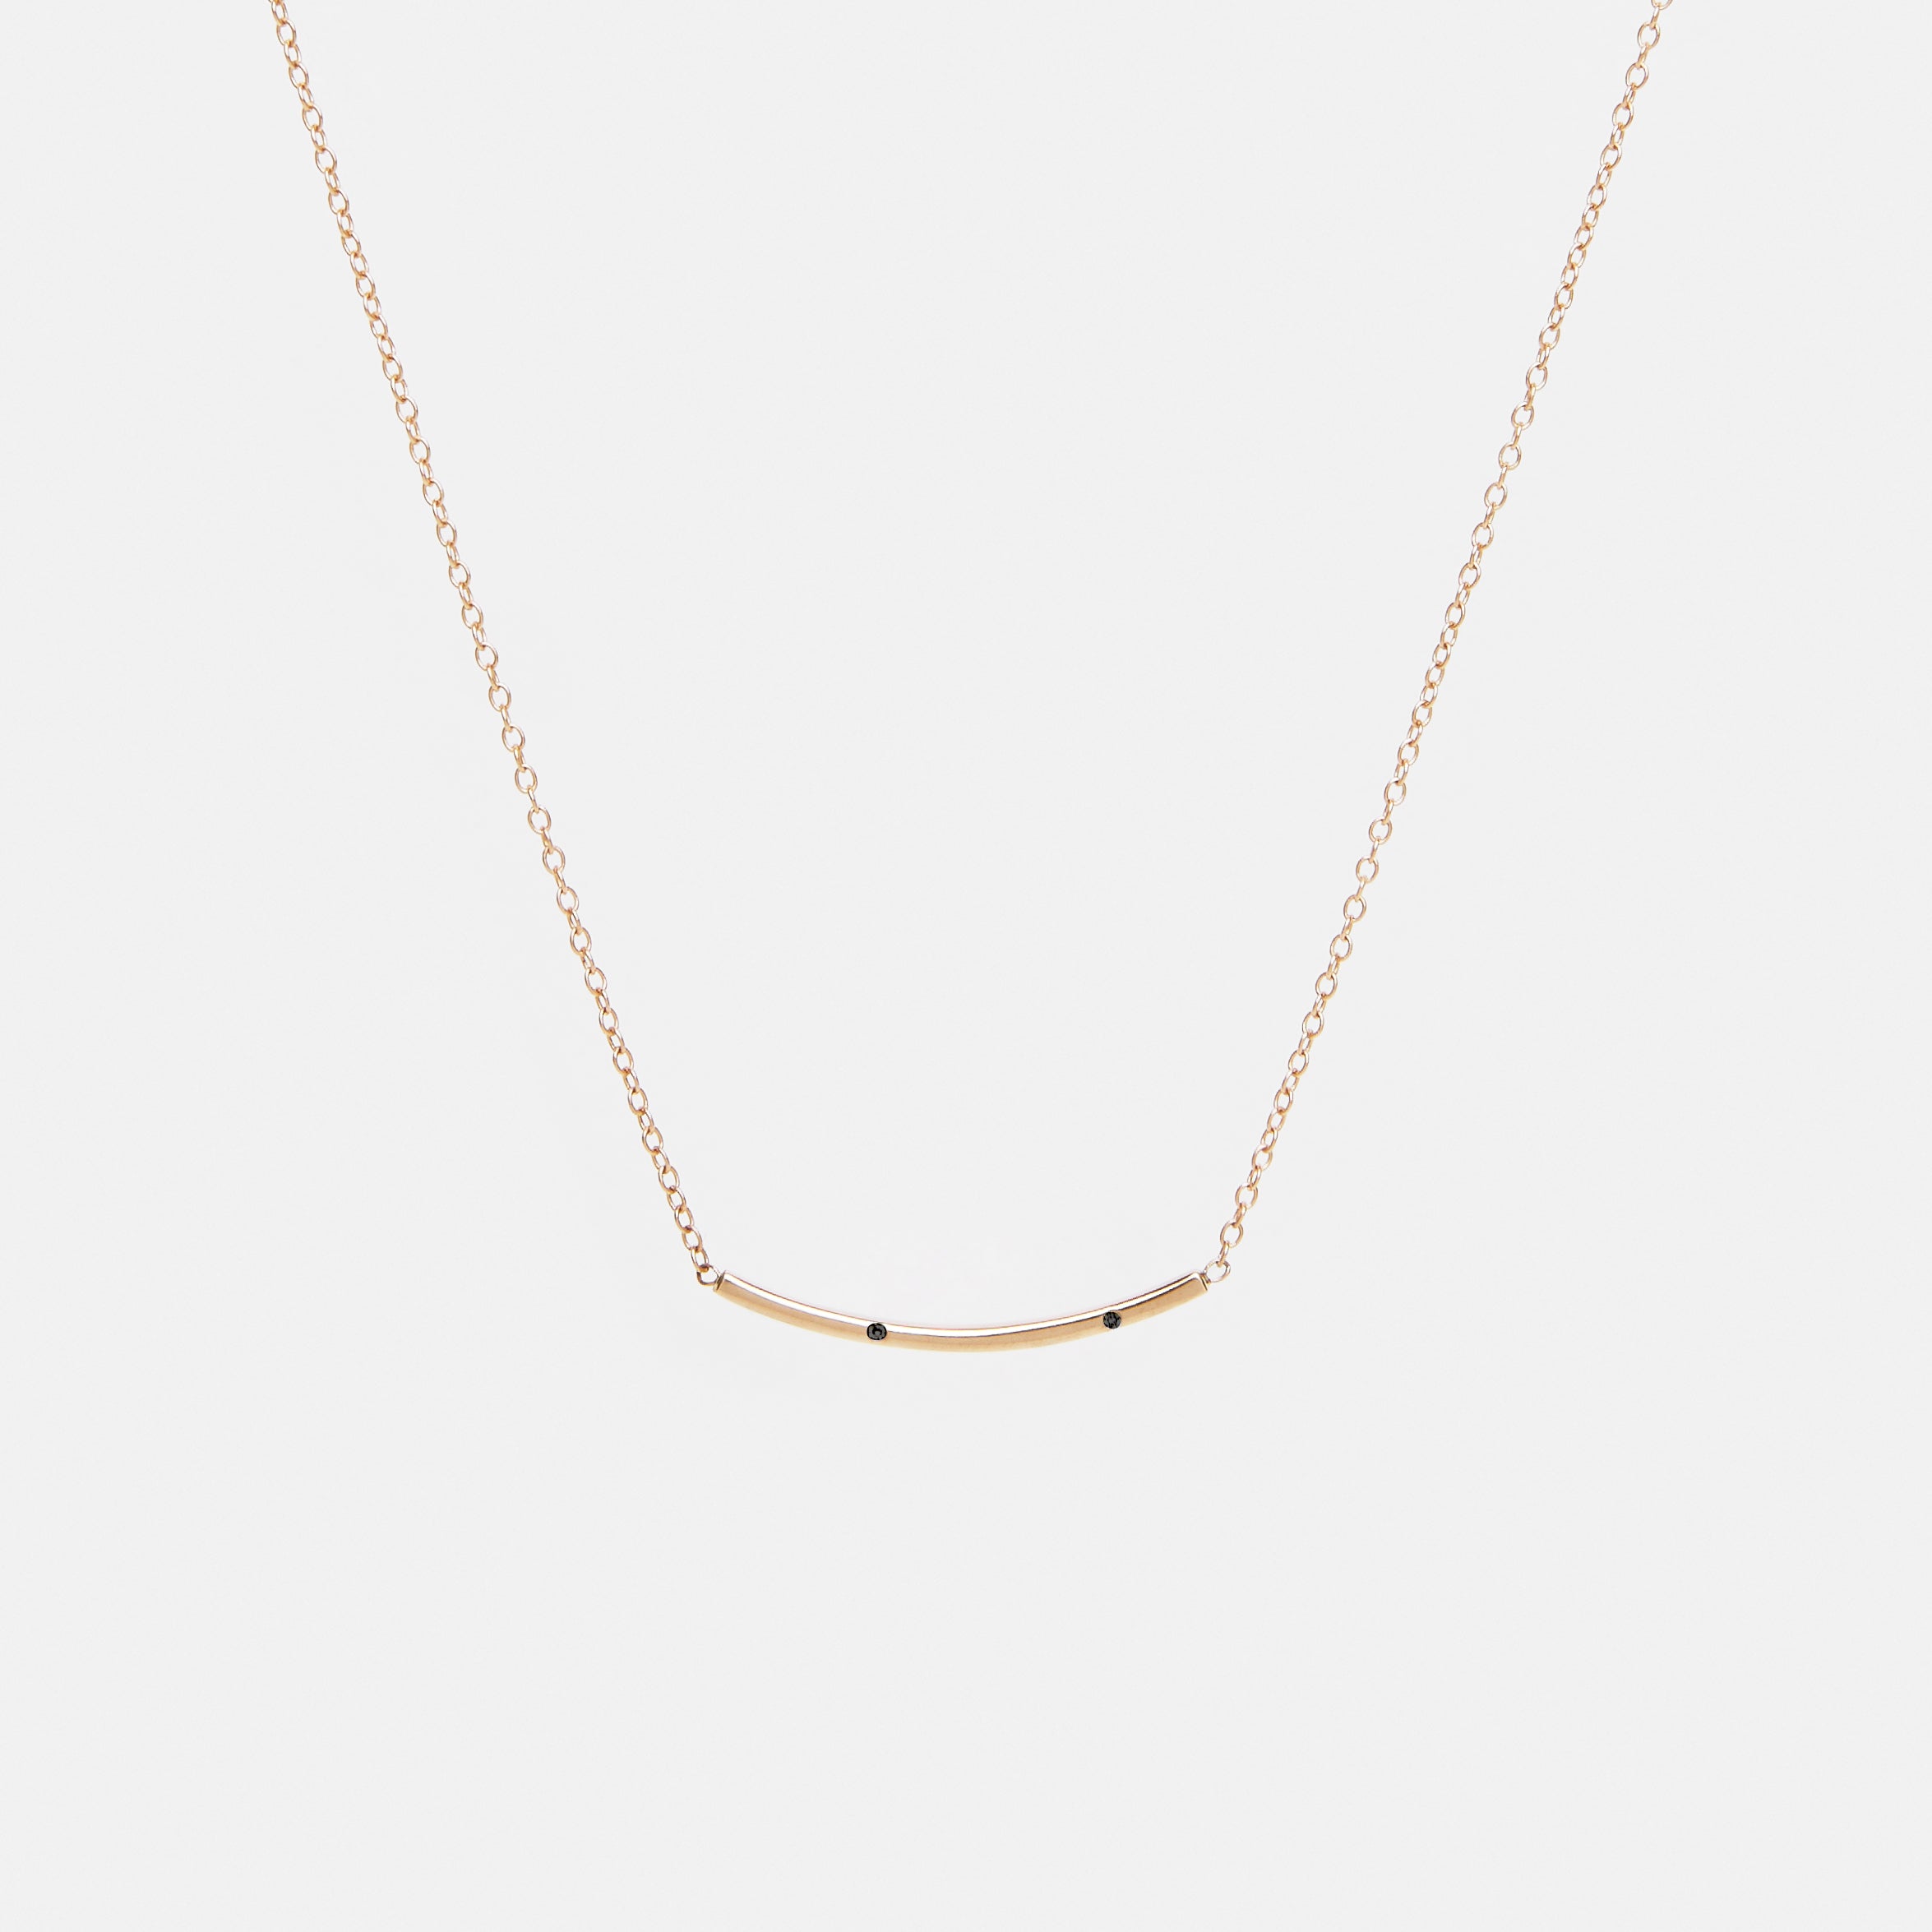 Sara Minimalist Necklace in 14k Gold set with Black Diamonds By SHW Fine Jewelry NYC